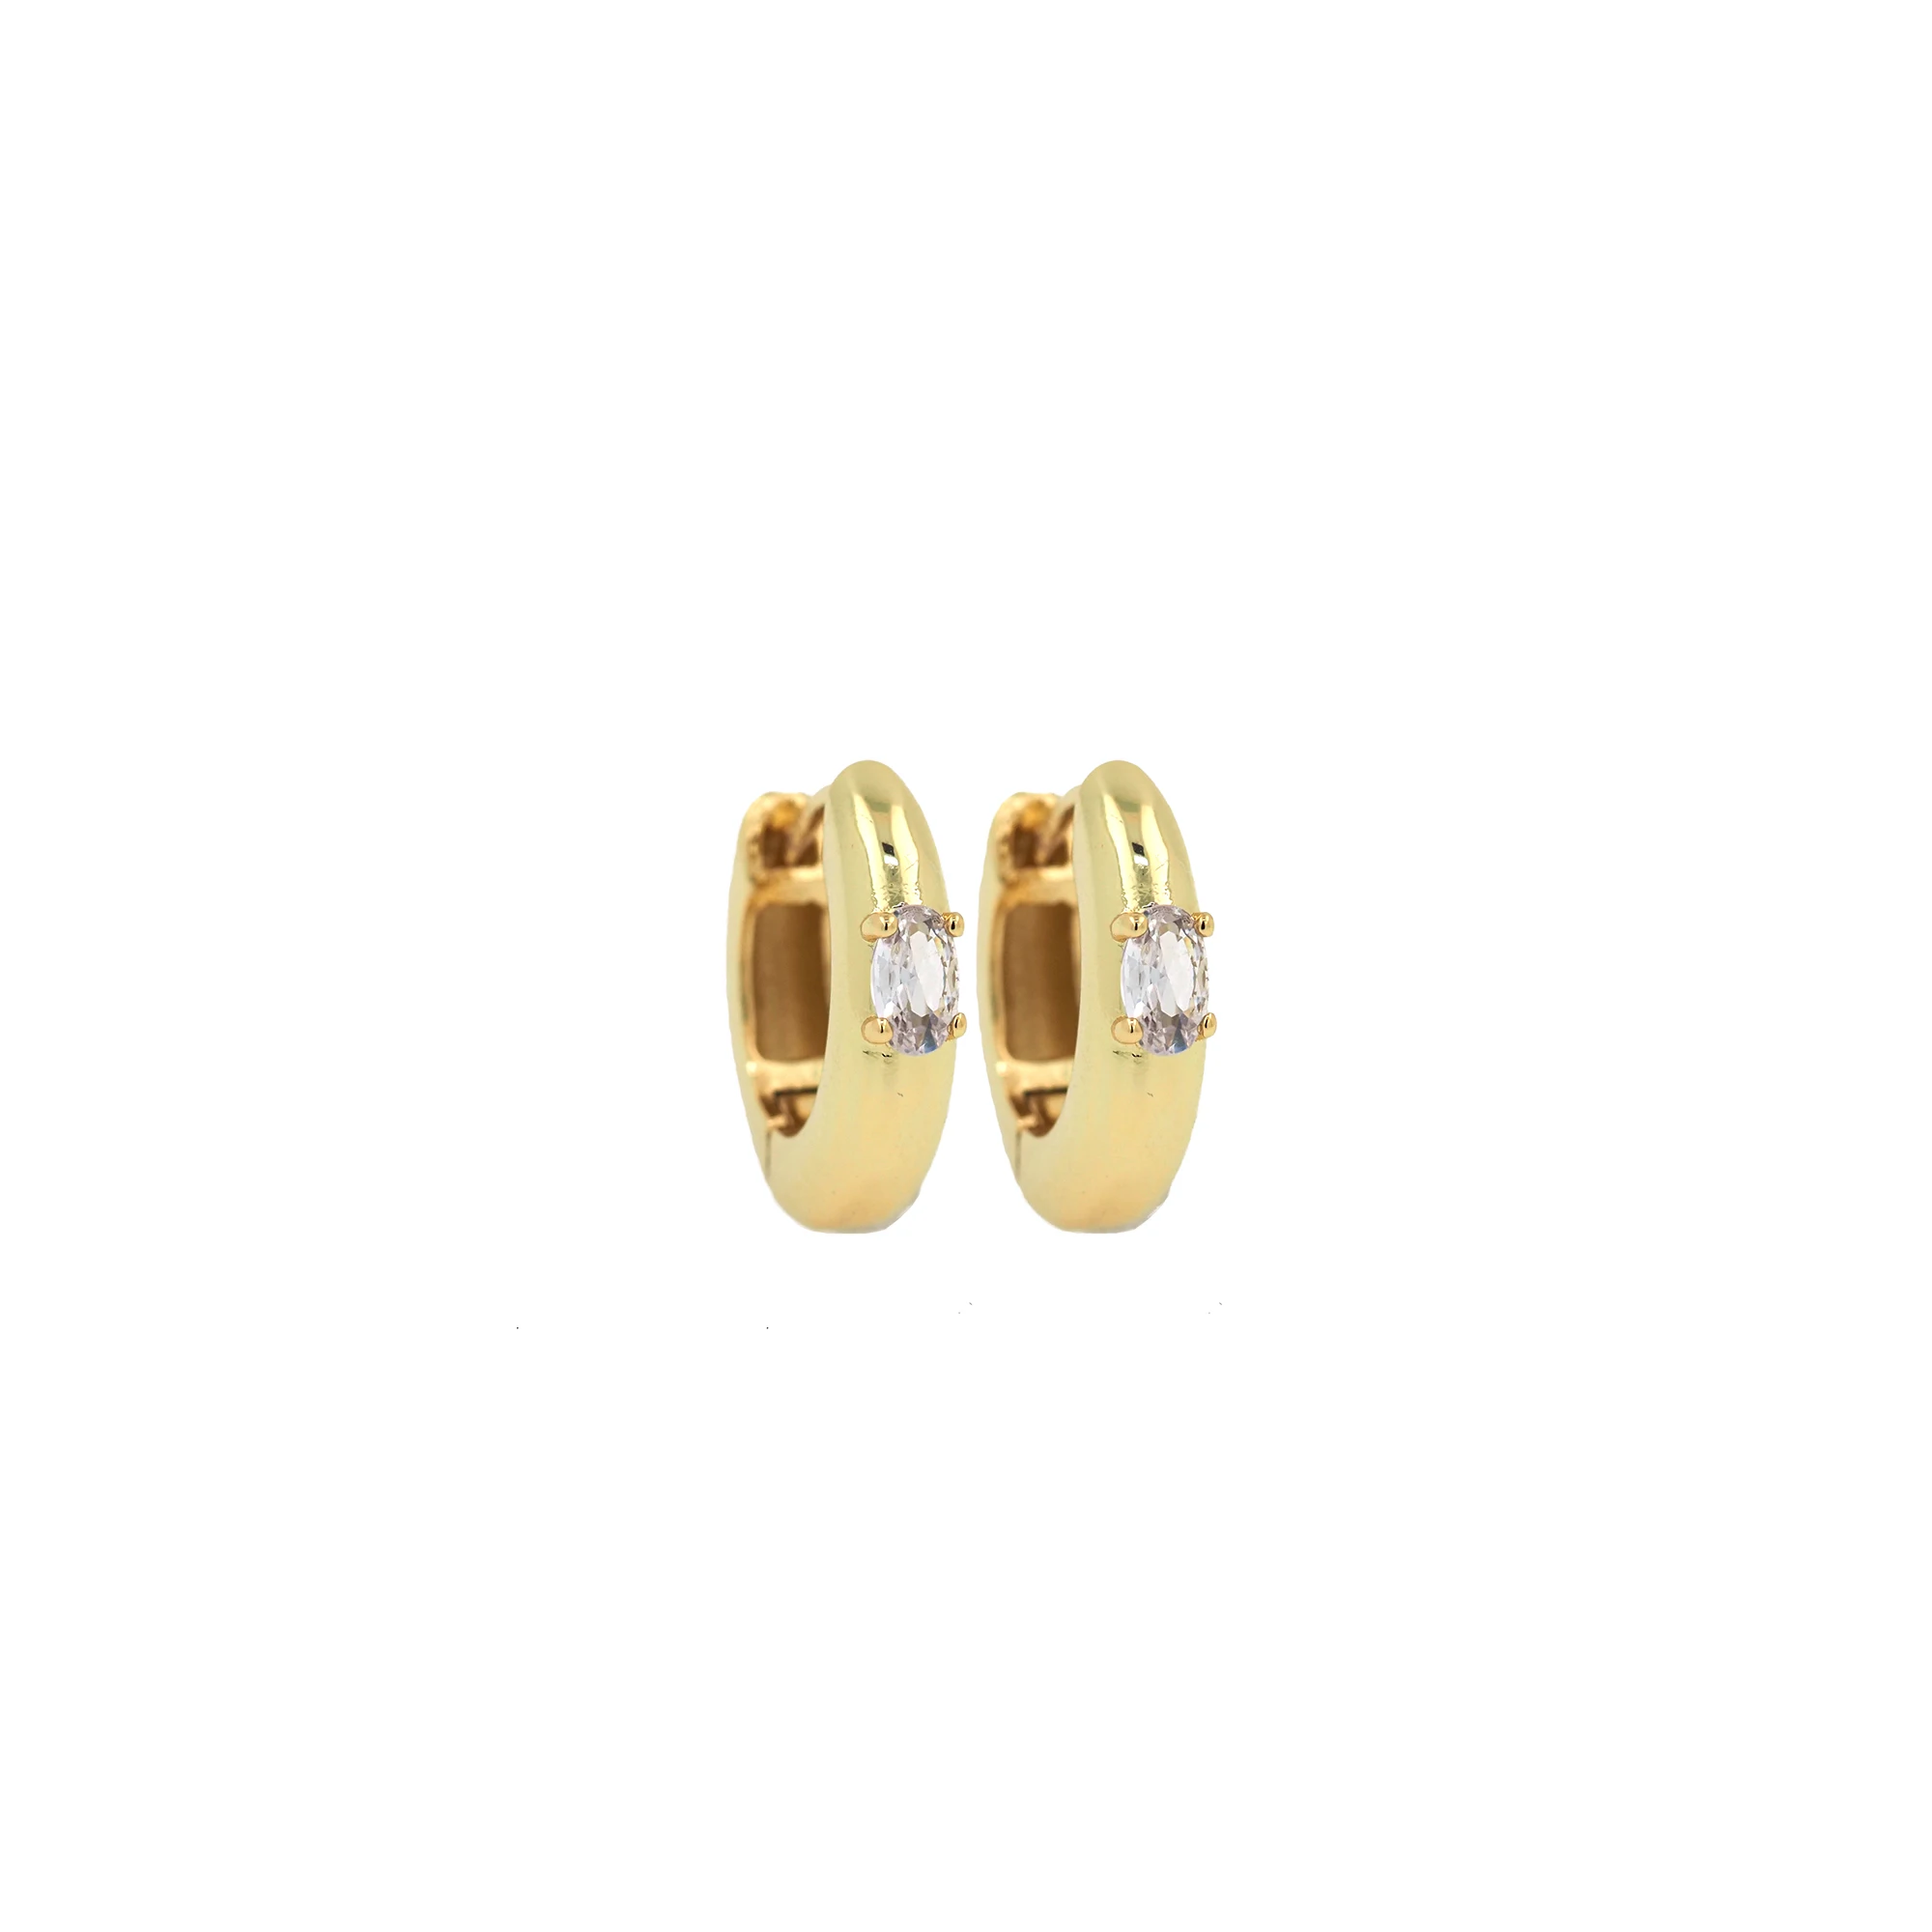 

New Style Gold Filled Huggie Earrings Zircon Thin Ear Hoops Cartilage Earring for Women Round Minimal Piercing Earring Jewelry